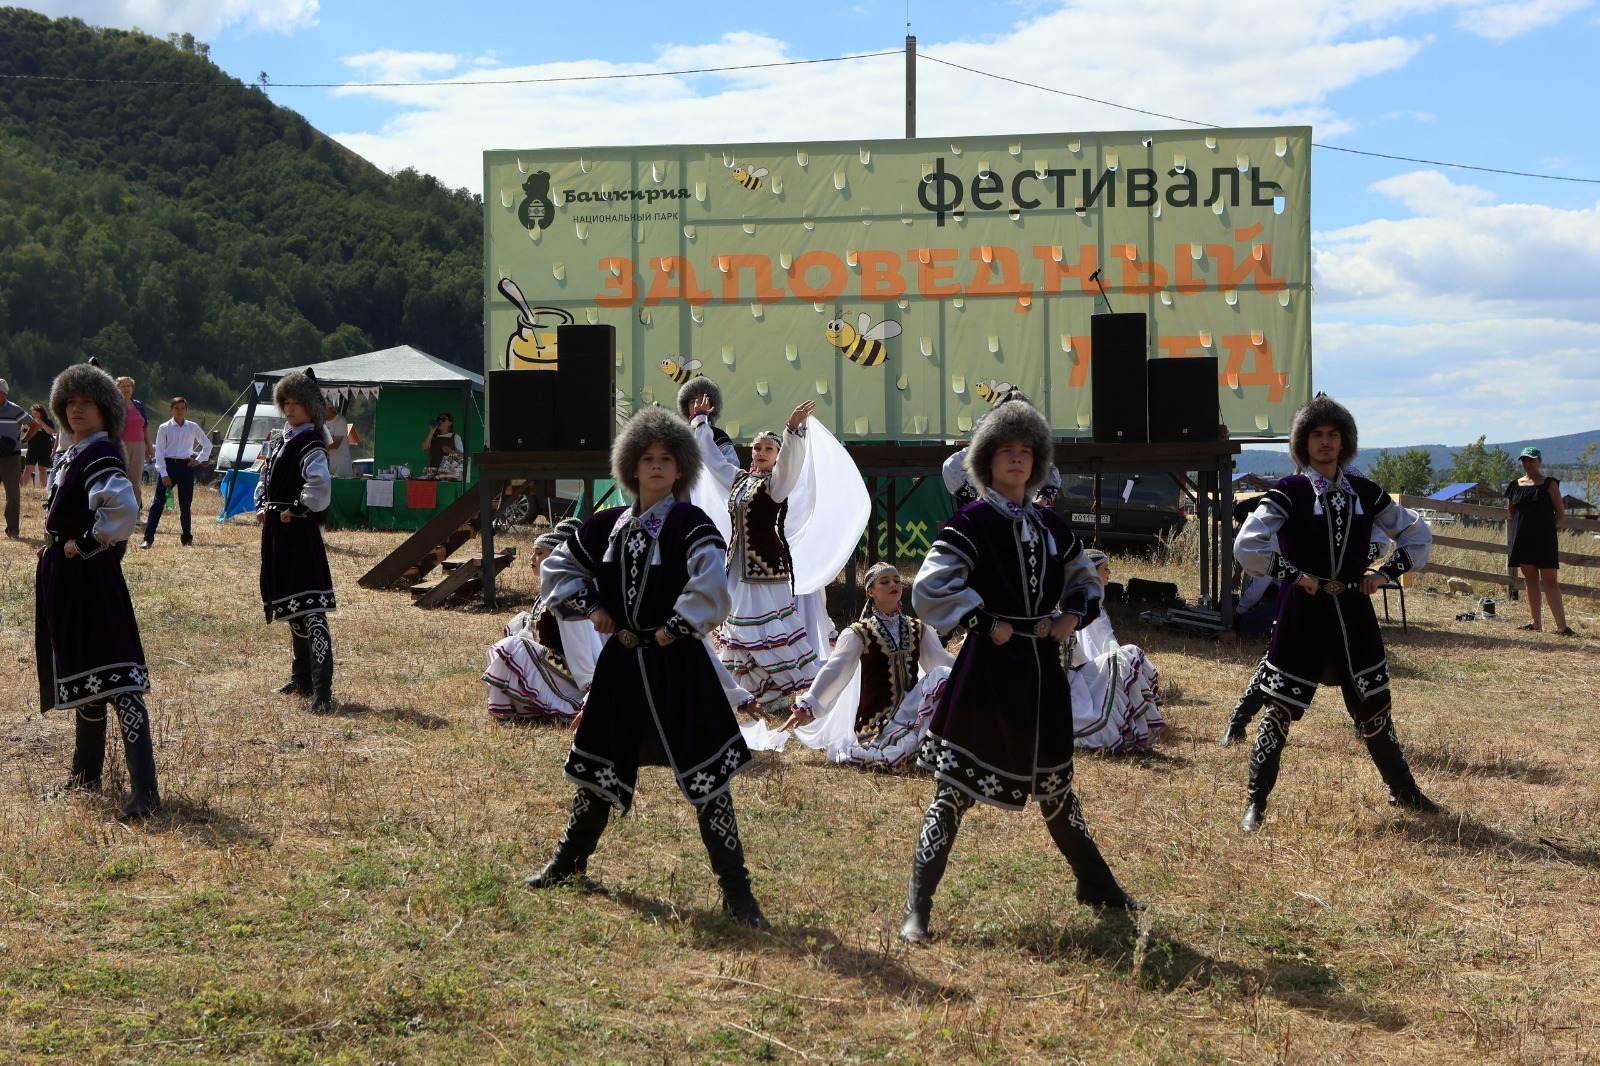 Башкортостан занял первое место в рейтинге по организации событийного туризма